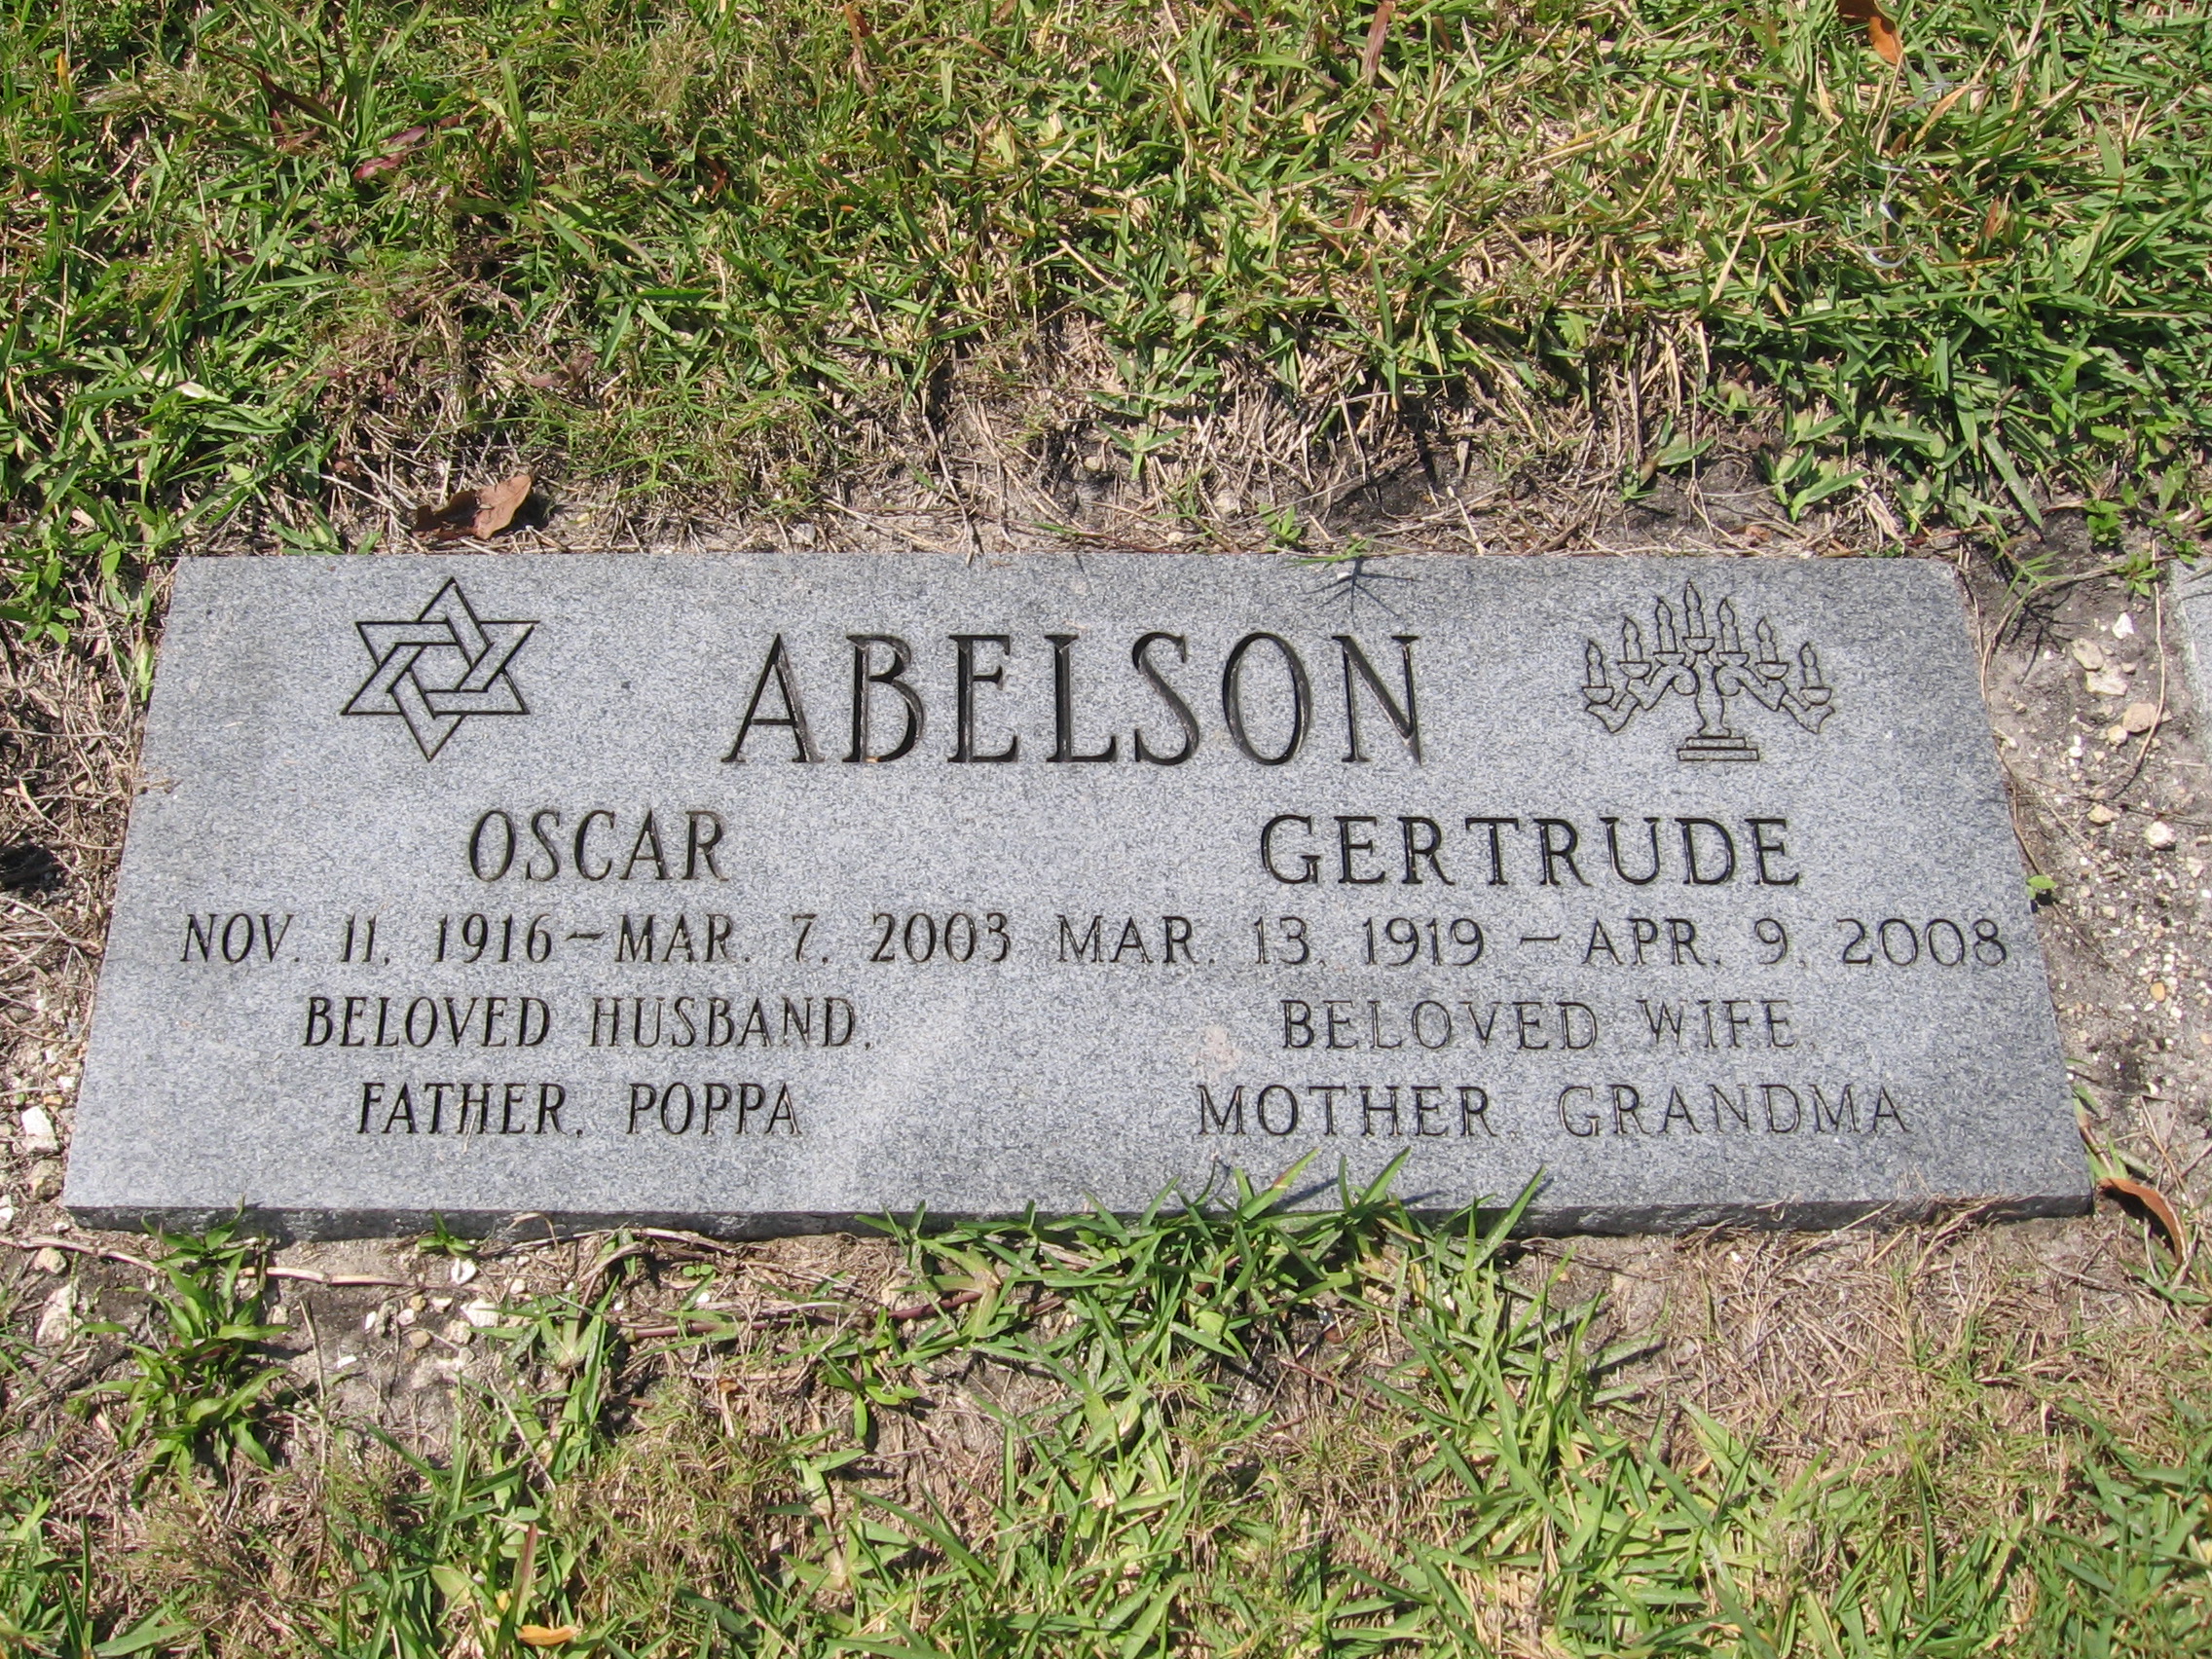 Oscar Abelson